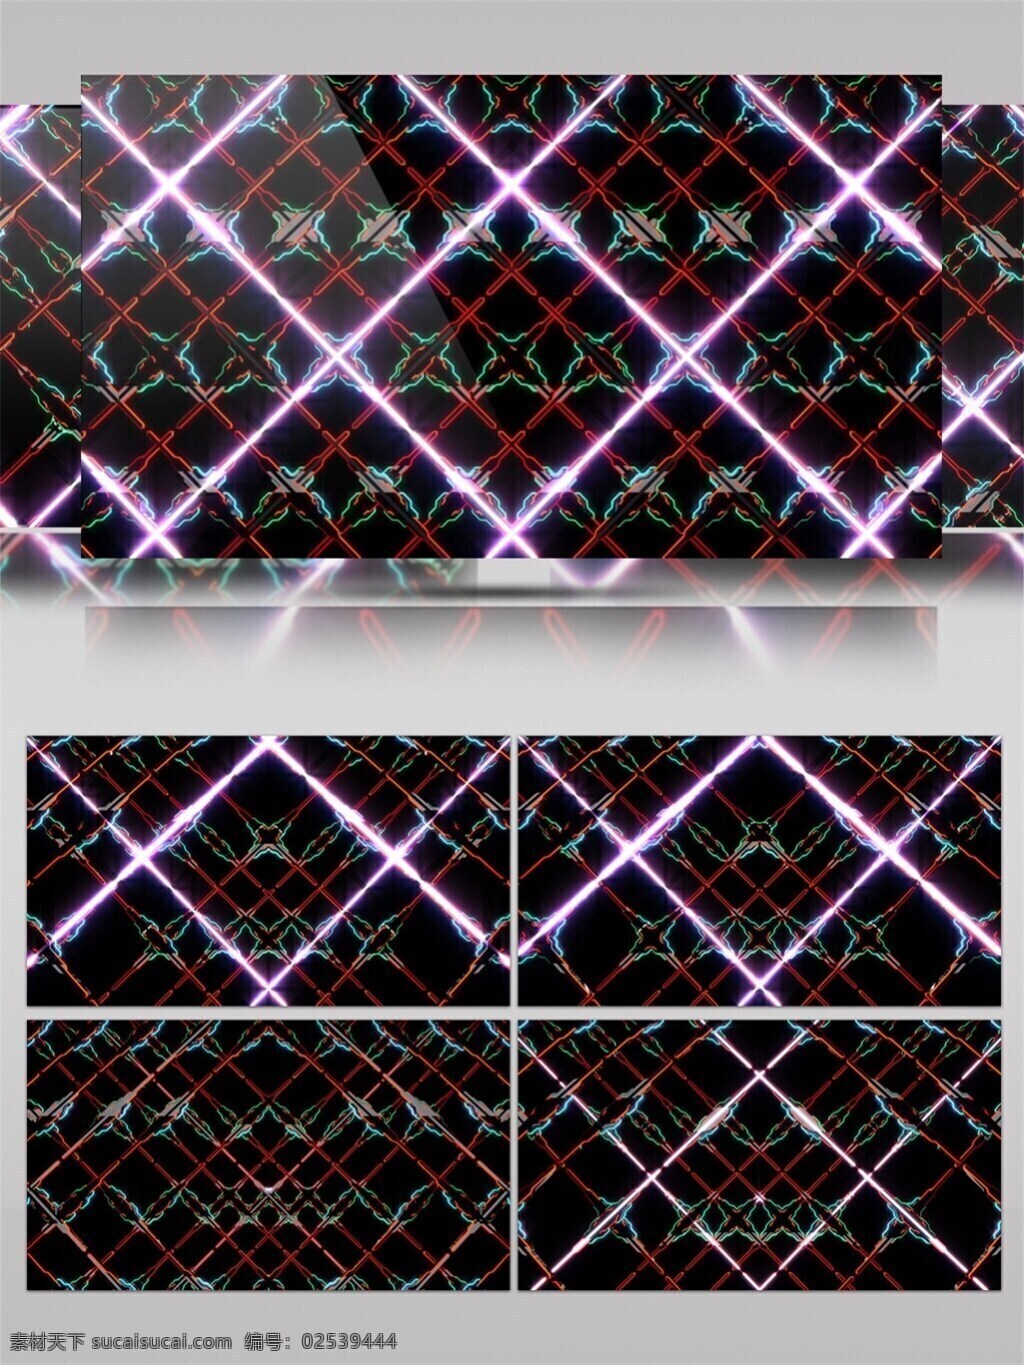 紫色 光束 网格 高清 视频 光斑散射 视觉享受 手机壁纸 网络